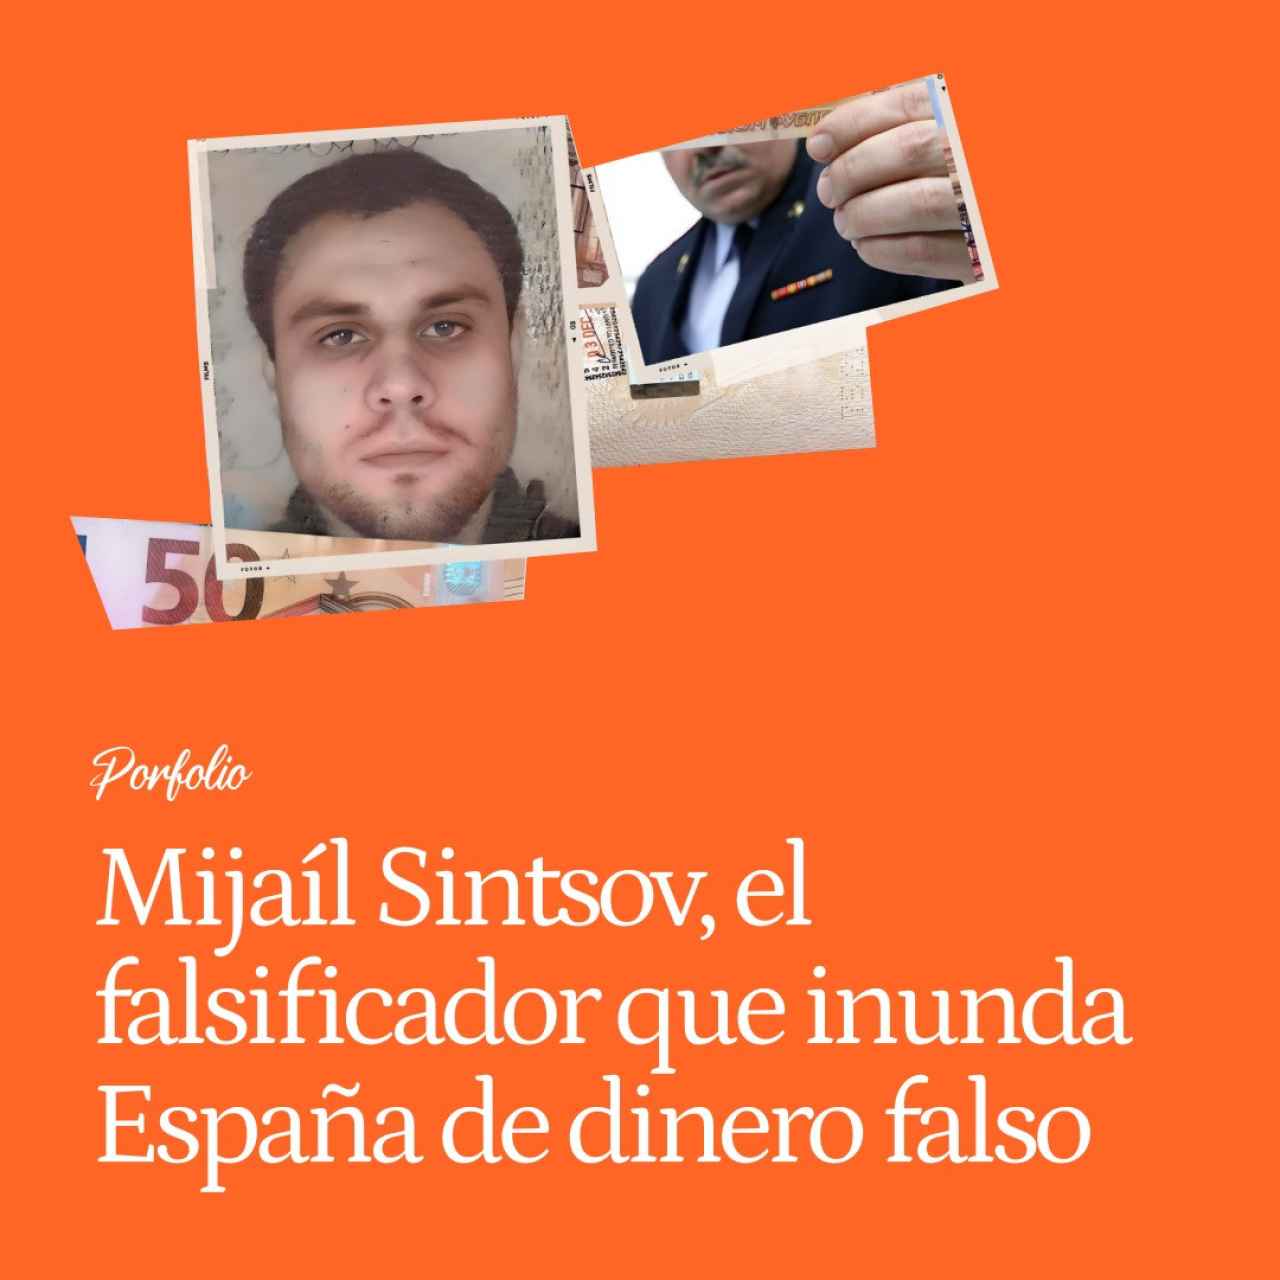 Mijaíl Sintsov, el falsificador que inunda España de dinero falso: "El FSB me dejaba operar, pero sólo contra enemigos de Rusia"